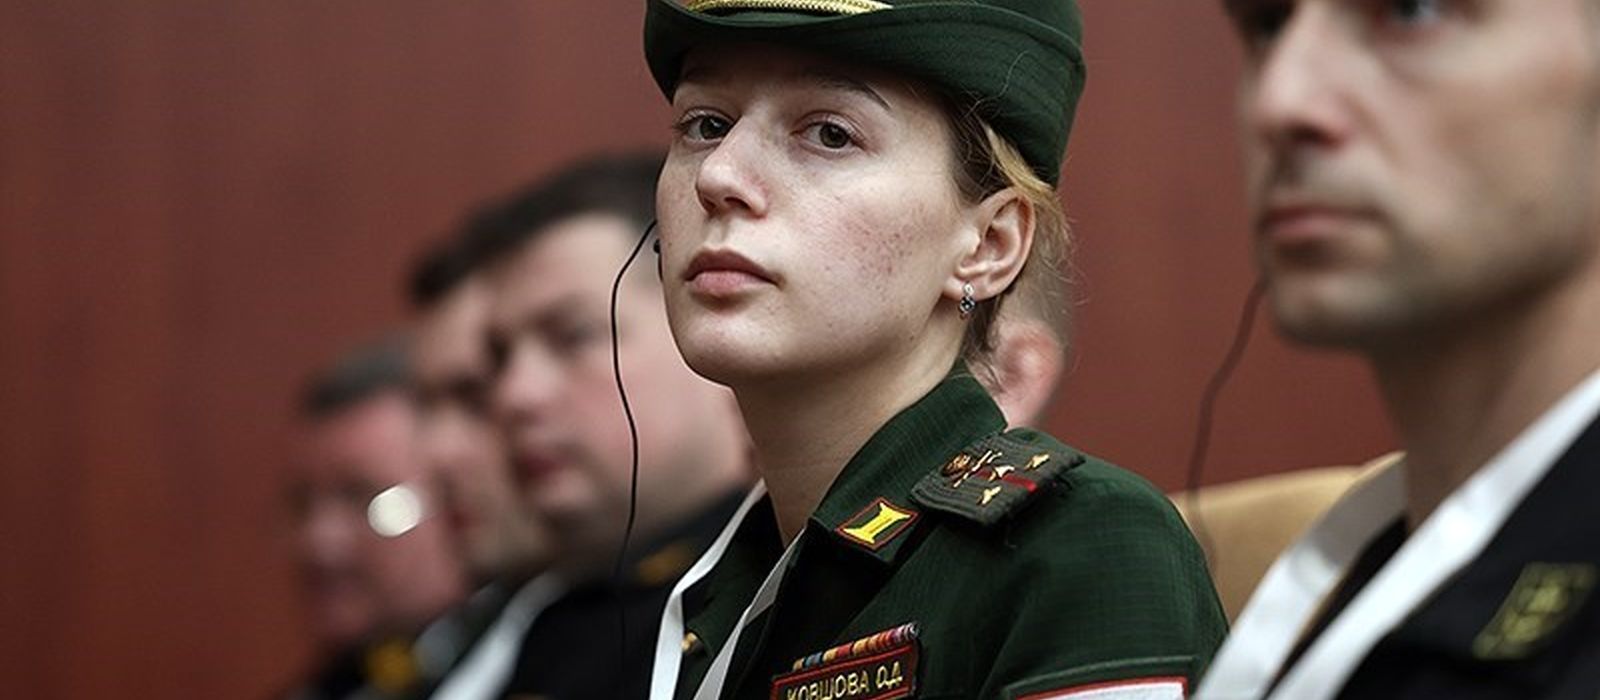 تصویر جنجالی از افسر زن روس در بندر کنارک ایران